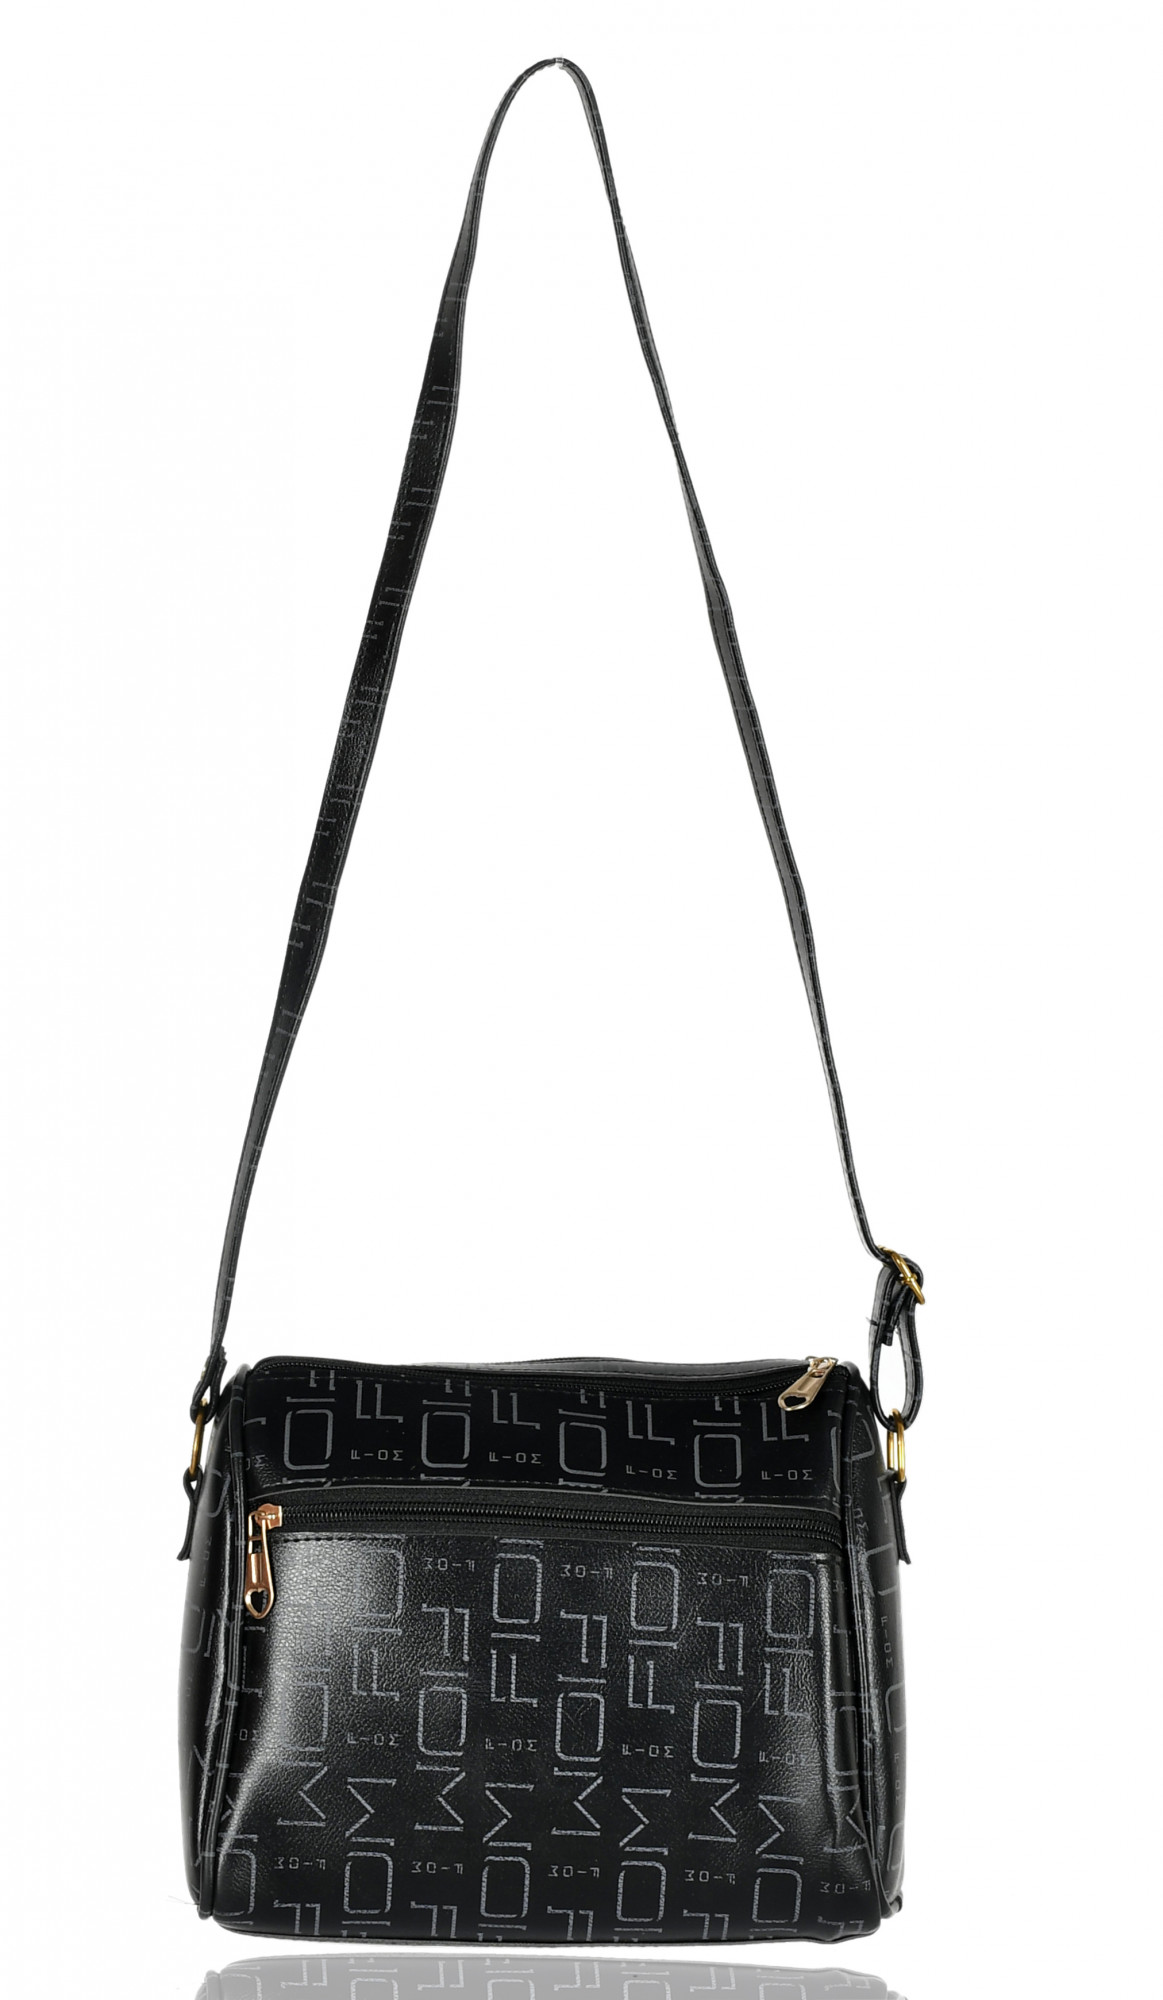 Kuber Industries Crossbody Bag for Women Stylish Designer Purse with Adjustable Shoulder Strap (Black)